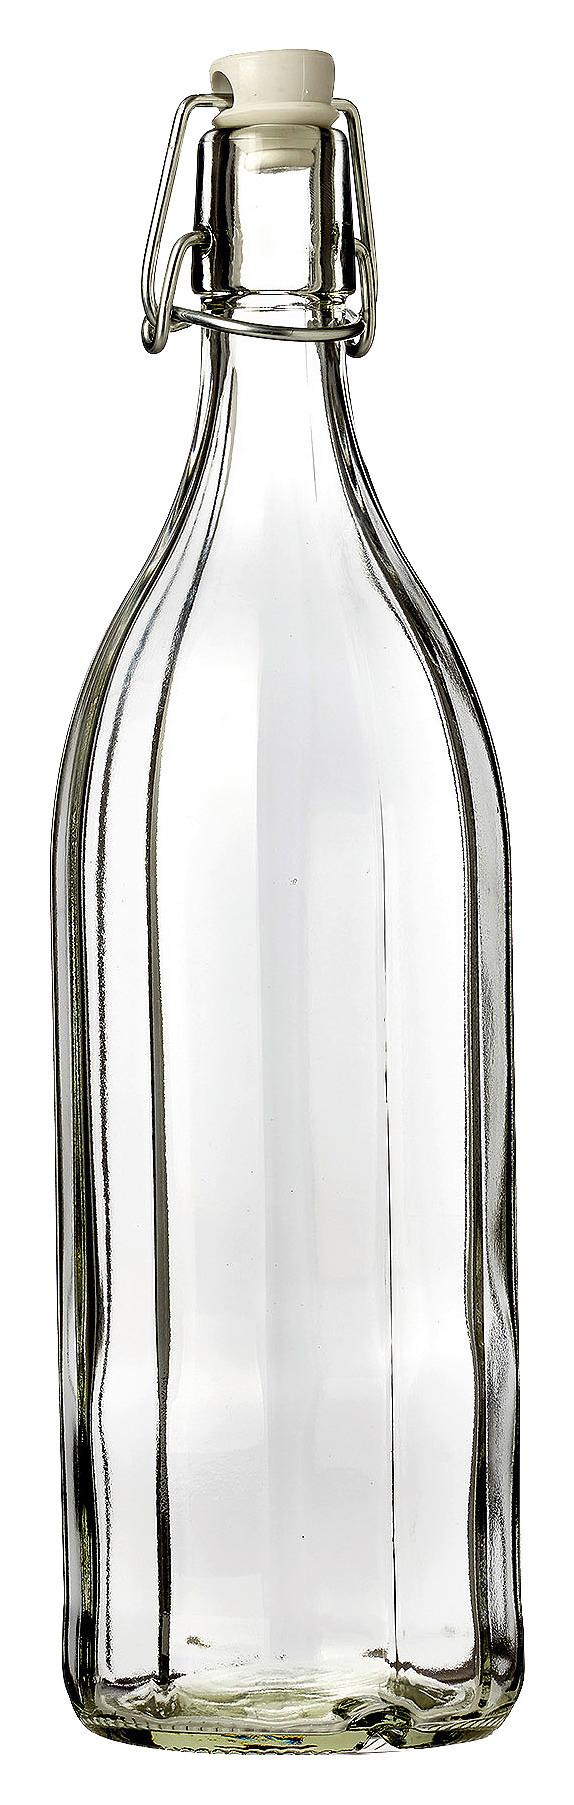 Universalflasche Basic aus Glas ca. 250ml - Klar, KONVENTIONELL, Glas (6,5/20/6,5cm)